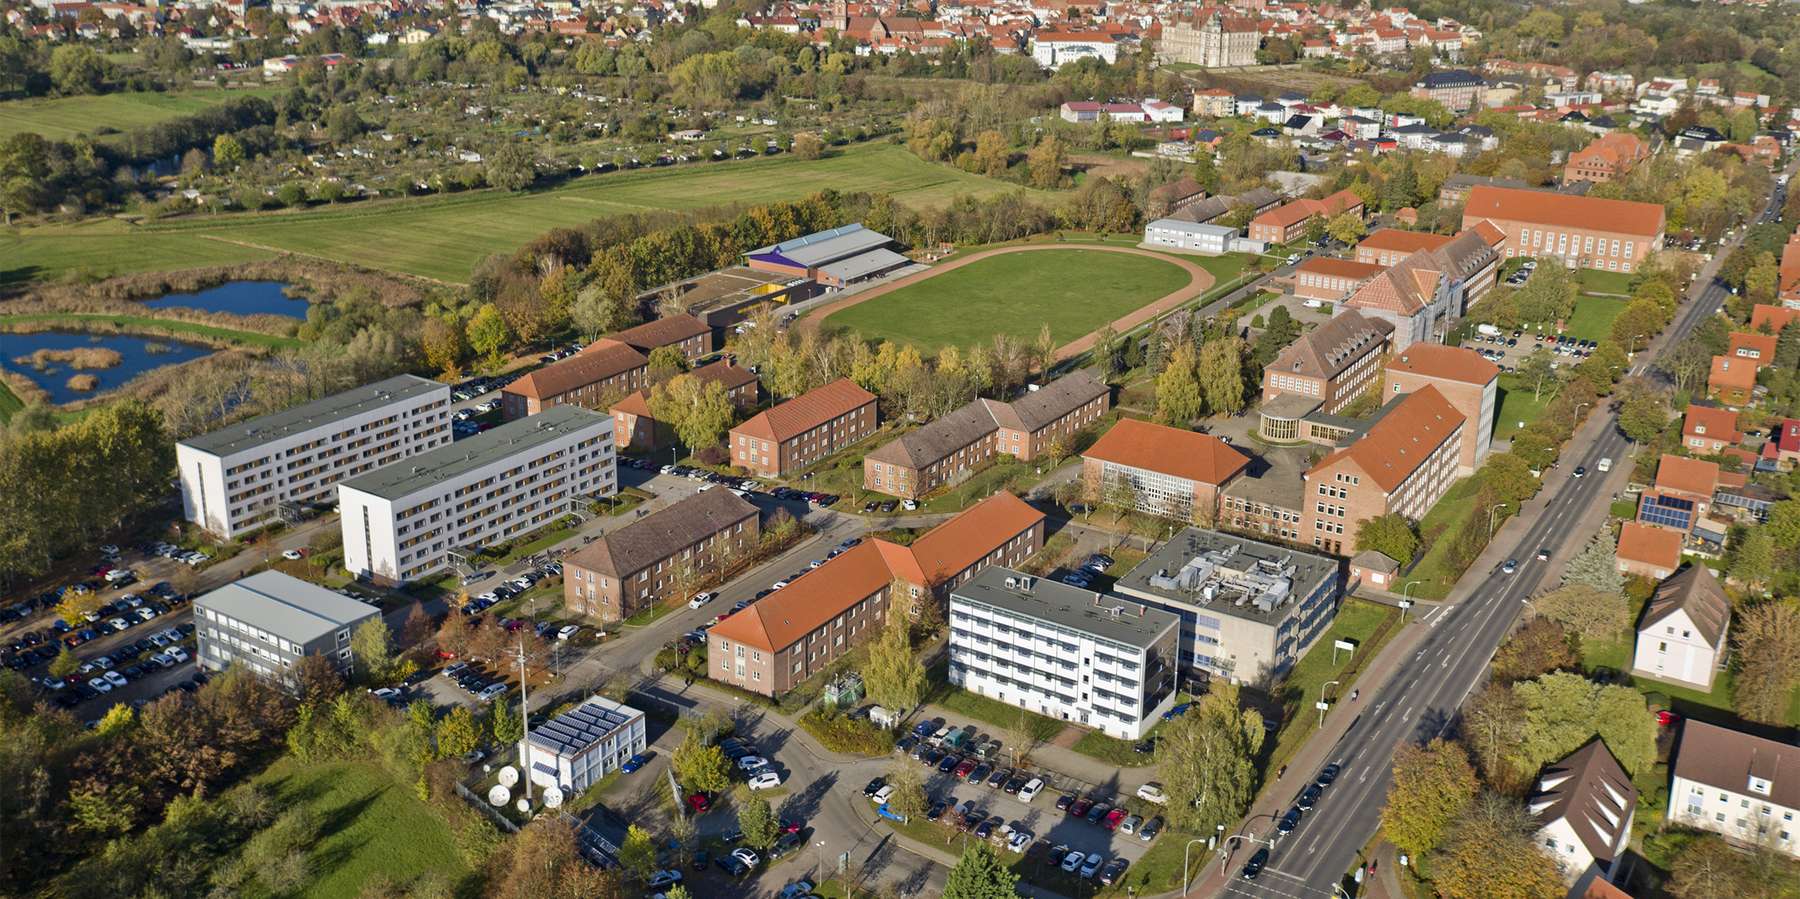 Von oben betrachtet: Das Areal der Fachhochschule für öffentliche Verwaltung, Polizei und Rechtspflege in Güstrow. © 2019 Jens Tirgrath, copter-drone